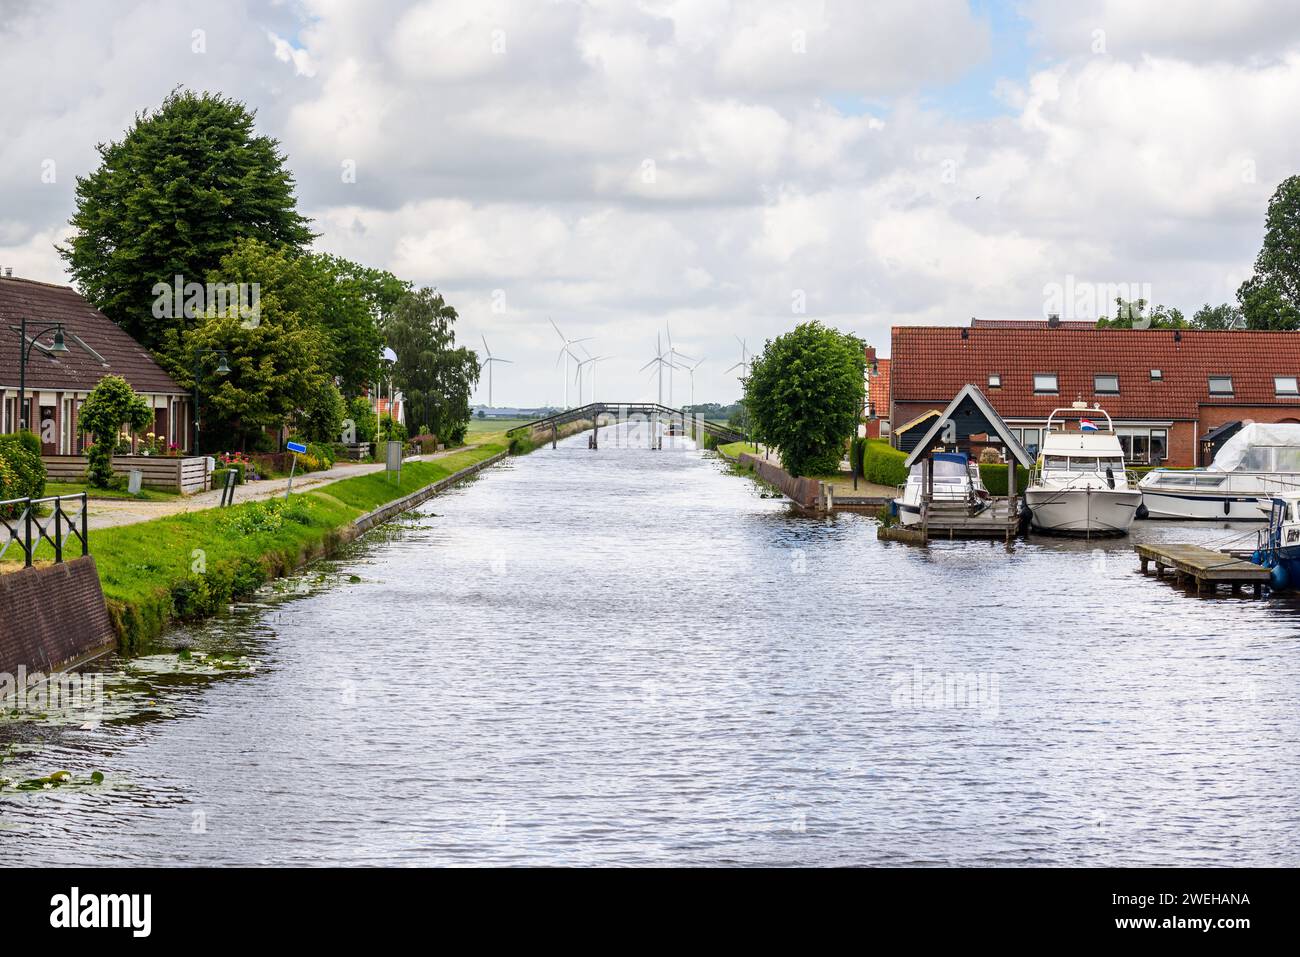 Attraversa una piccola città nella campagna dei Paesi Bassi in un giorno estivo. Un parco eolico è visibile sullo sfondo. Foto Stock